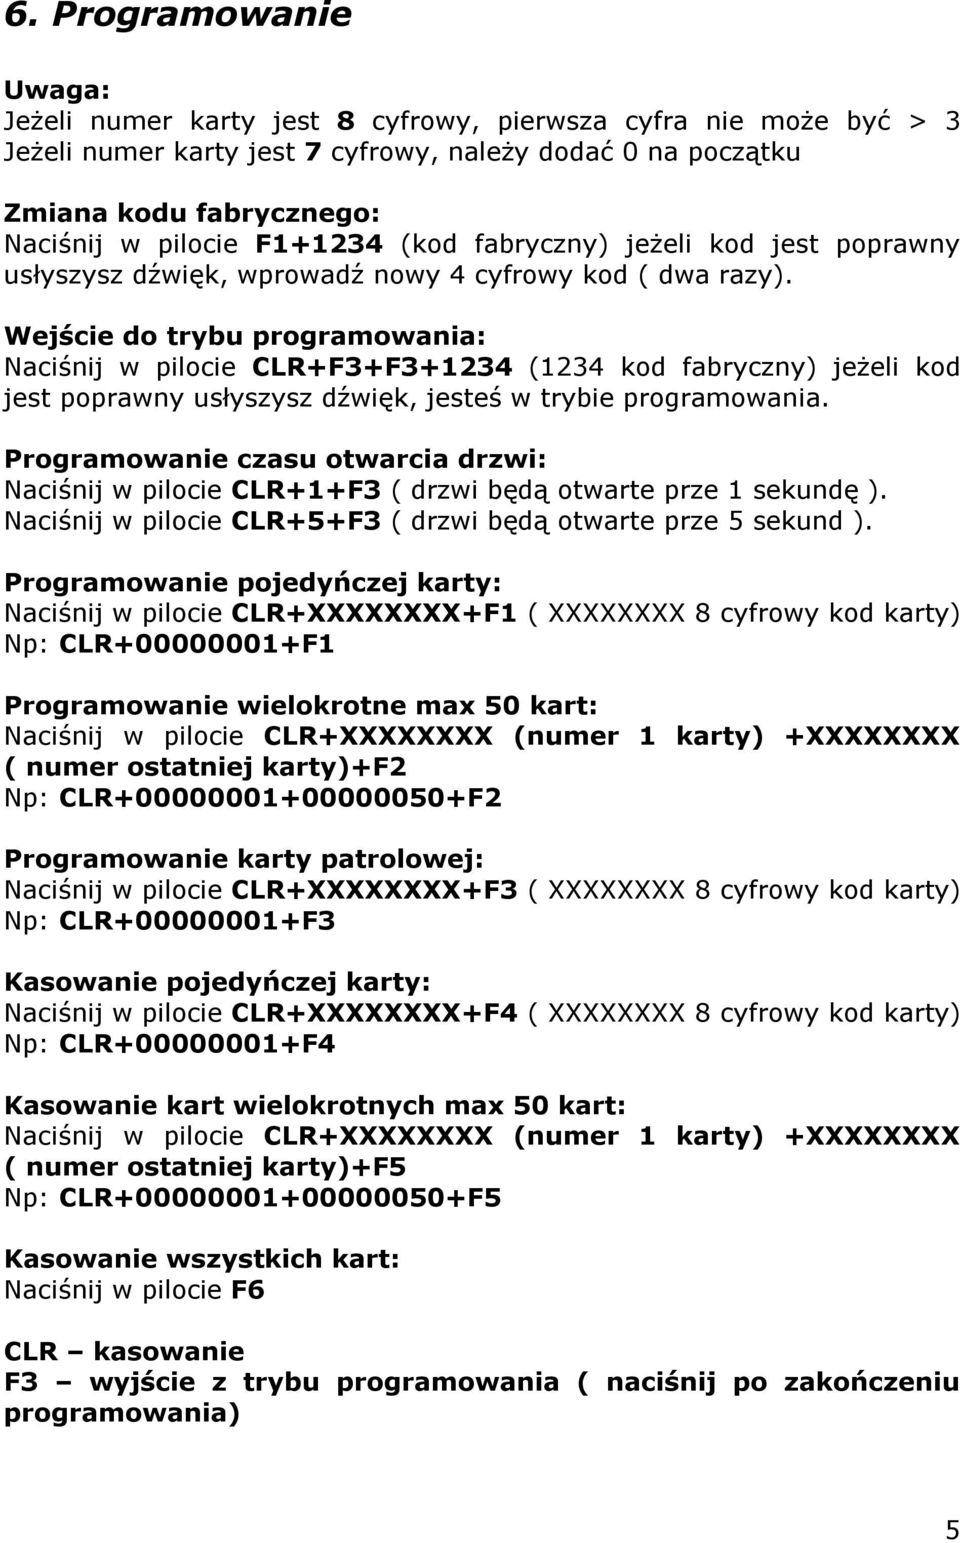 Wejście do trybu programowania: Naciśnij w pilocie CLR+F3+F3+1234 (1234 kod fabryczny) jeżeli kod jest poprawny usłyszysz dźwięk, jesteś w trybie programowania.